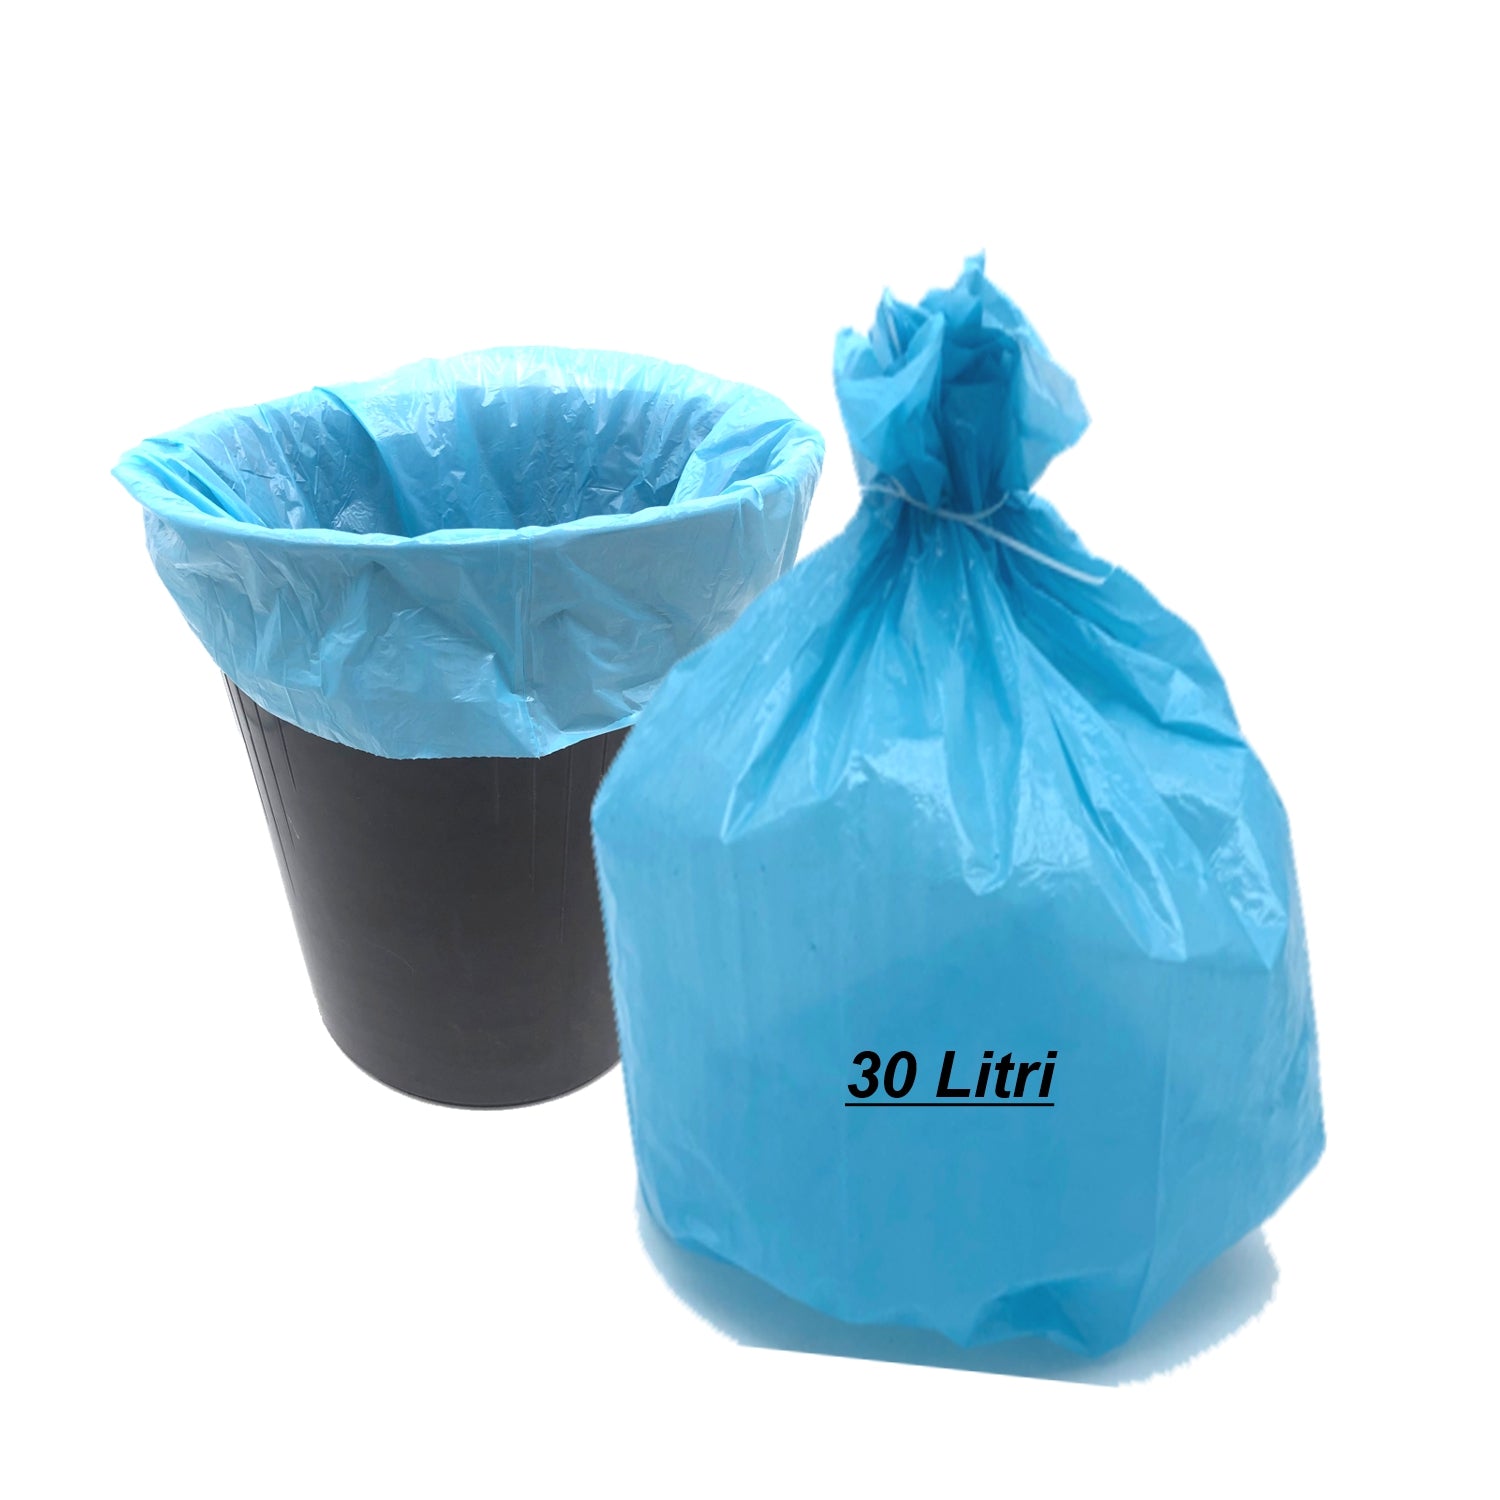 25 sacchi 30 litri spazzatura cm.50x60 colore azzurro peso gr.9